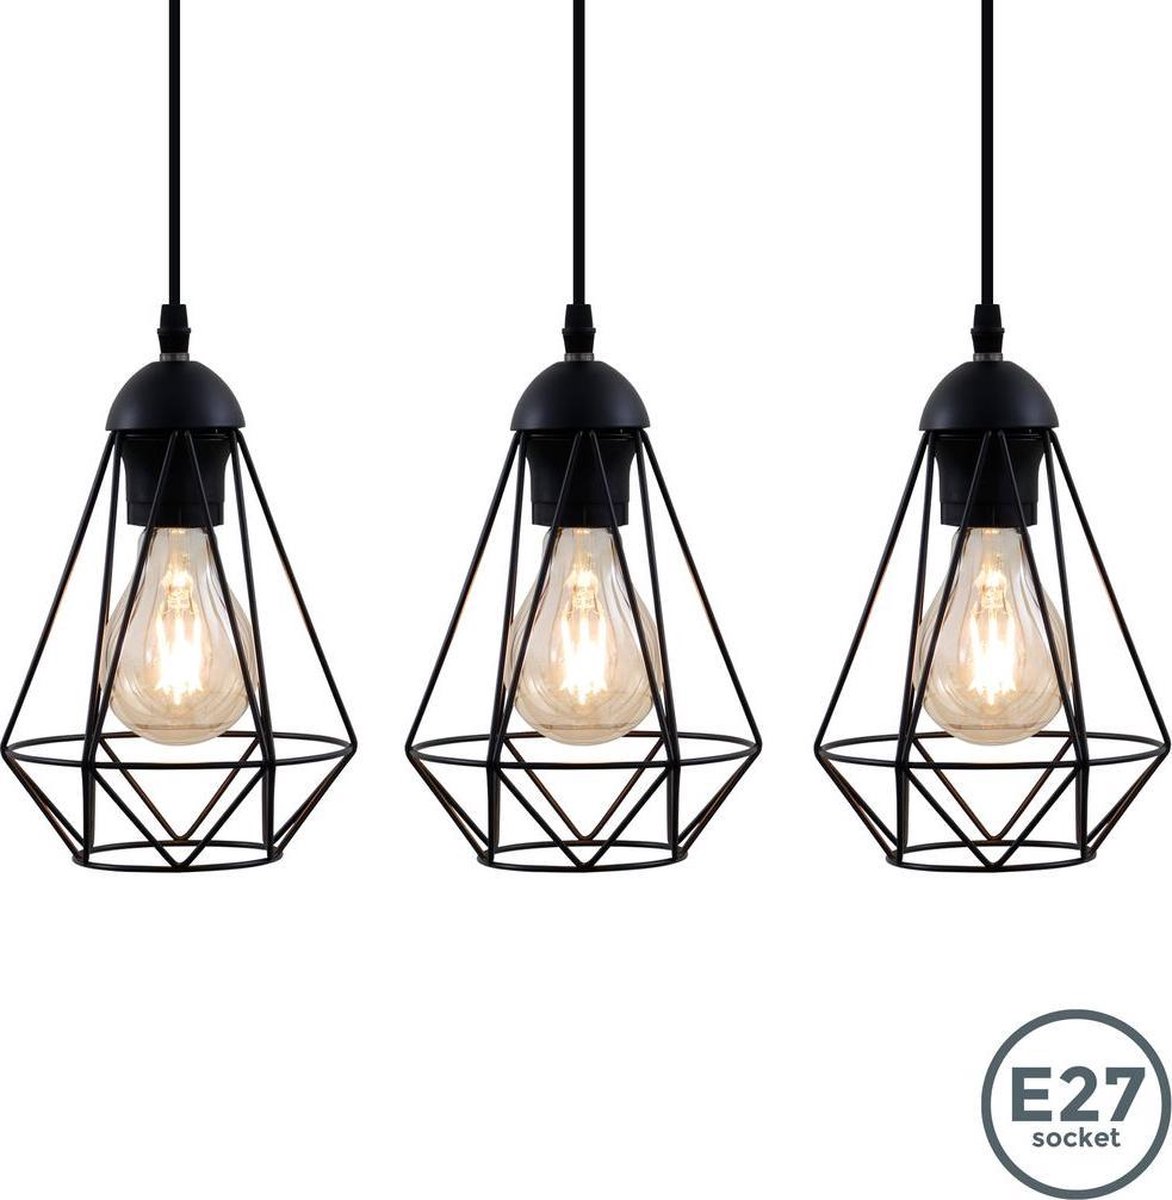 B.K.Licht - Metalen Hanglampen - zwart - voor binnen - industriële - met 3 lichtpunten - eetkamer - pendellamp - Ø16.5cm - E27 fitting - excl. lichtbronnen